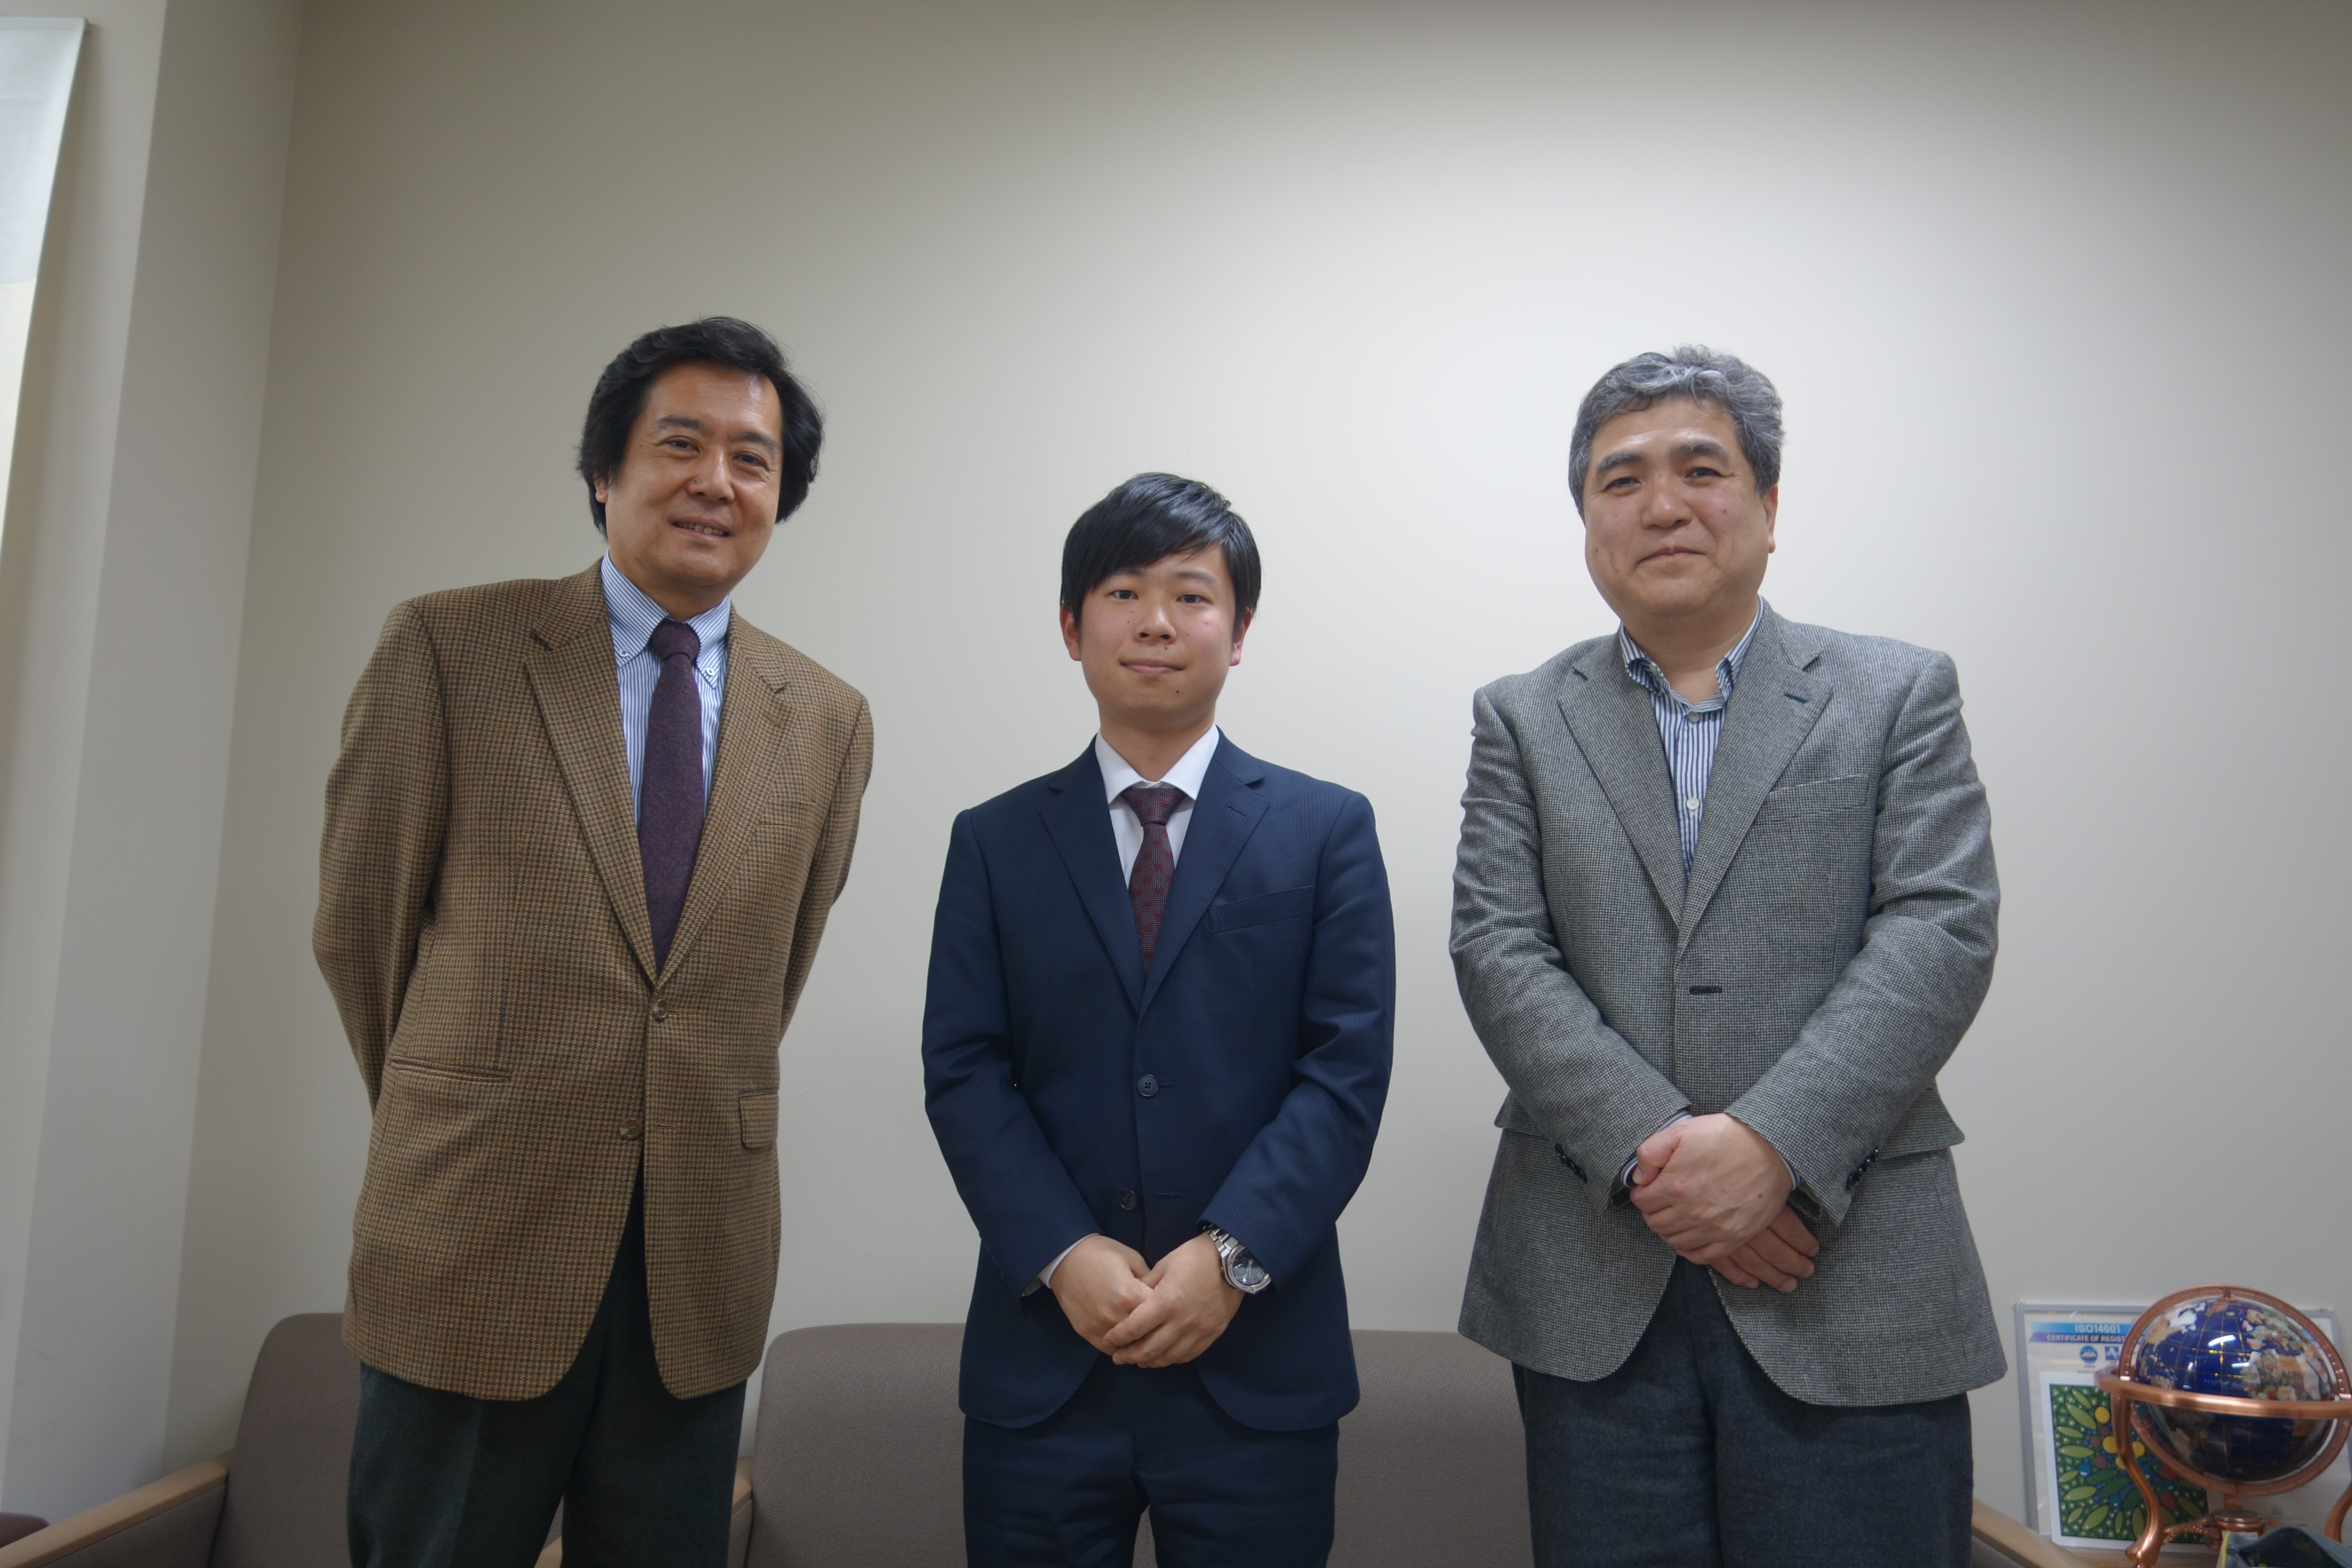 全員で記念撮影。左から長谷川教授、山本さん、渡邊教授。